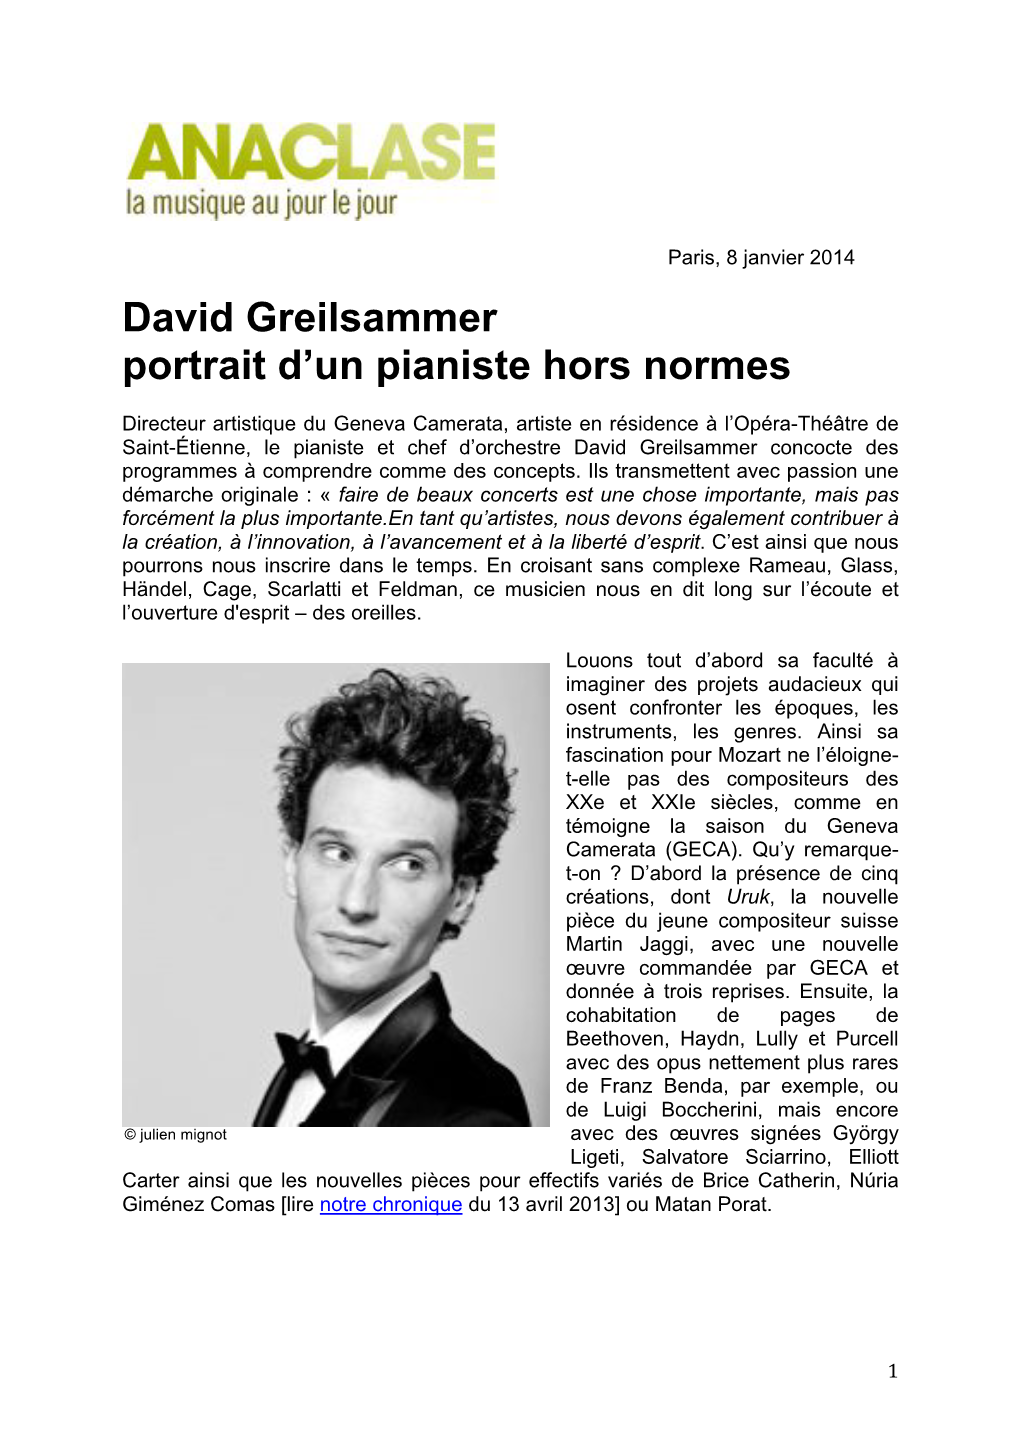 David Greilsammer Portrait D'un Pianiste Hors Normes